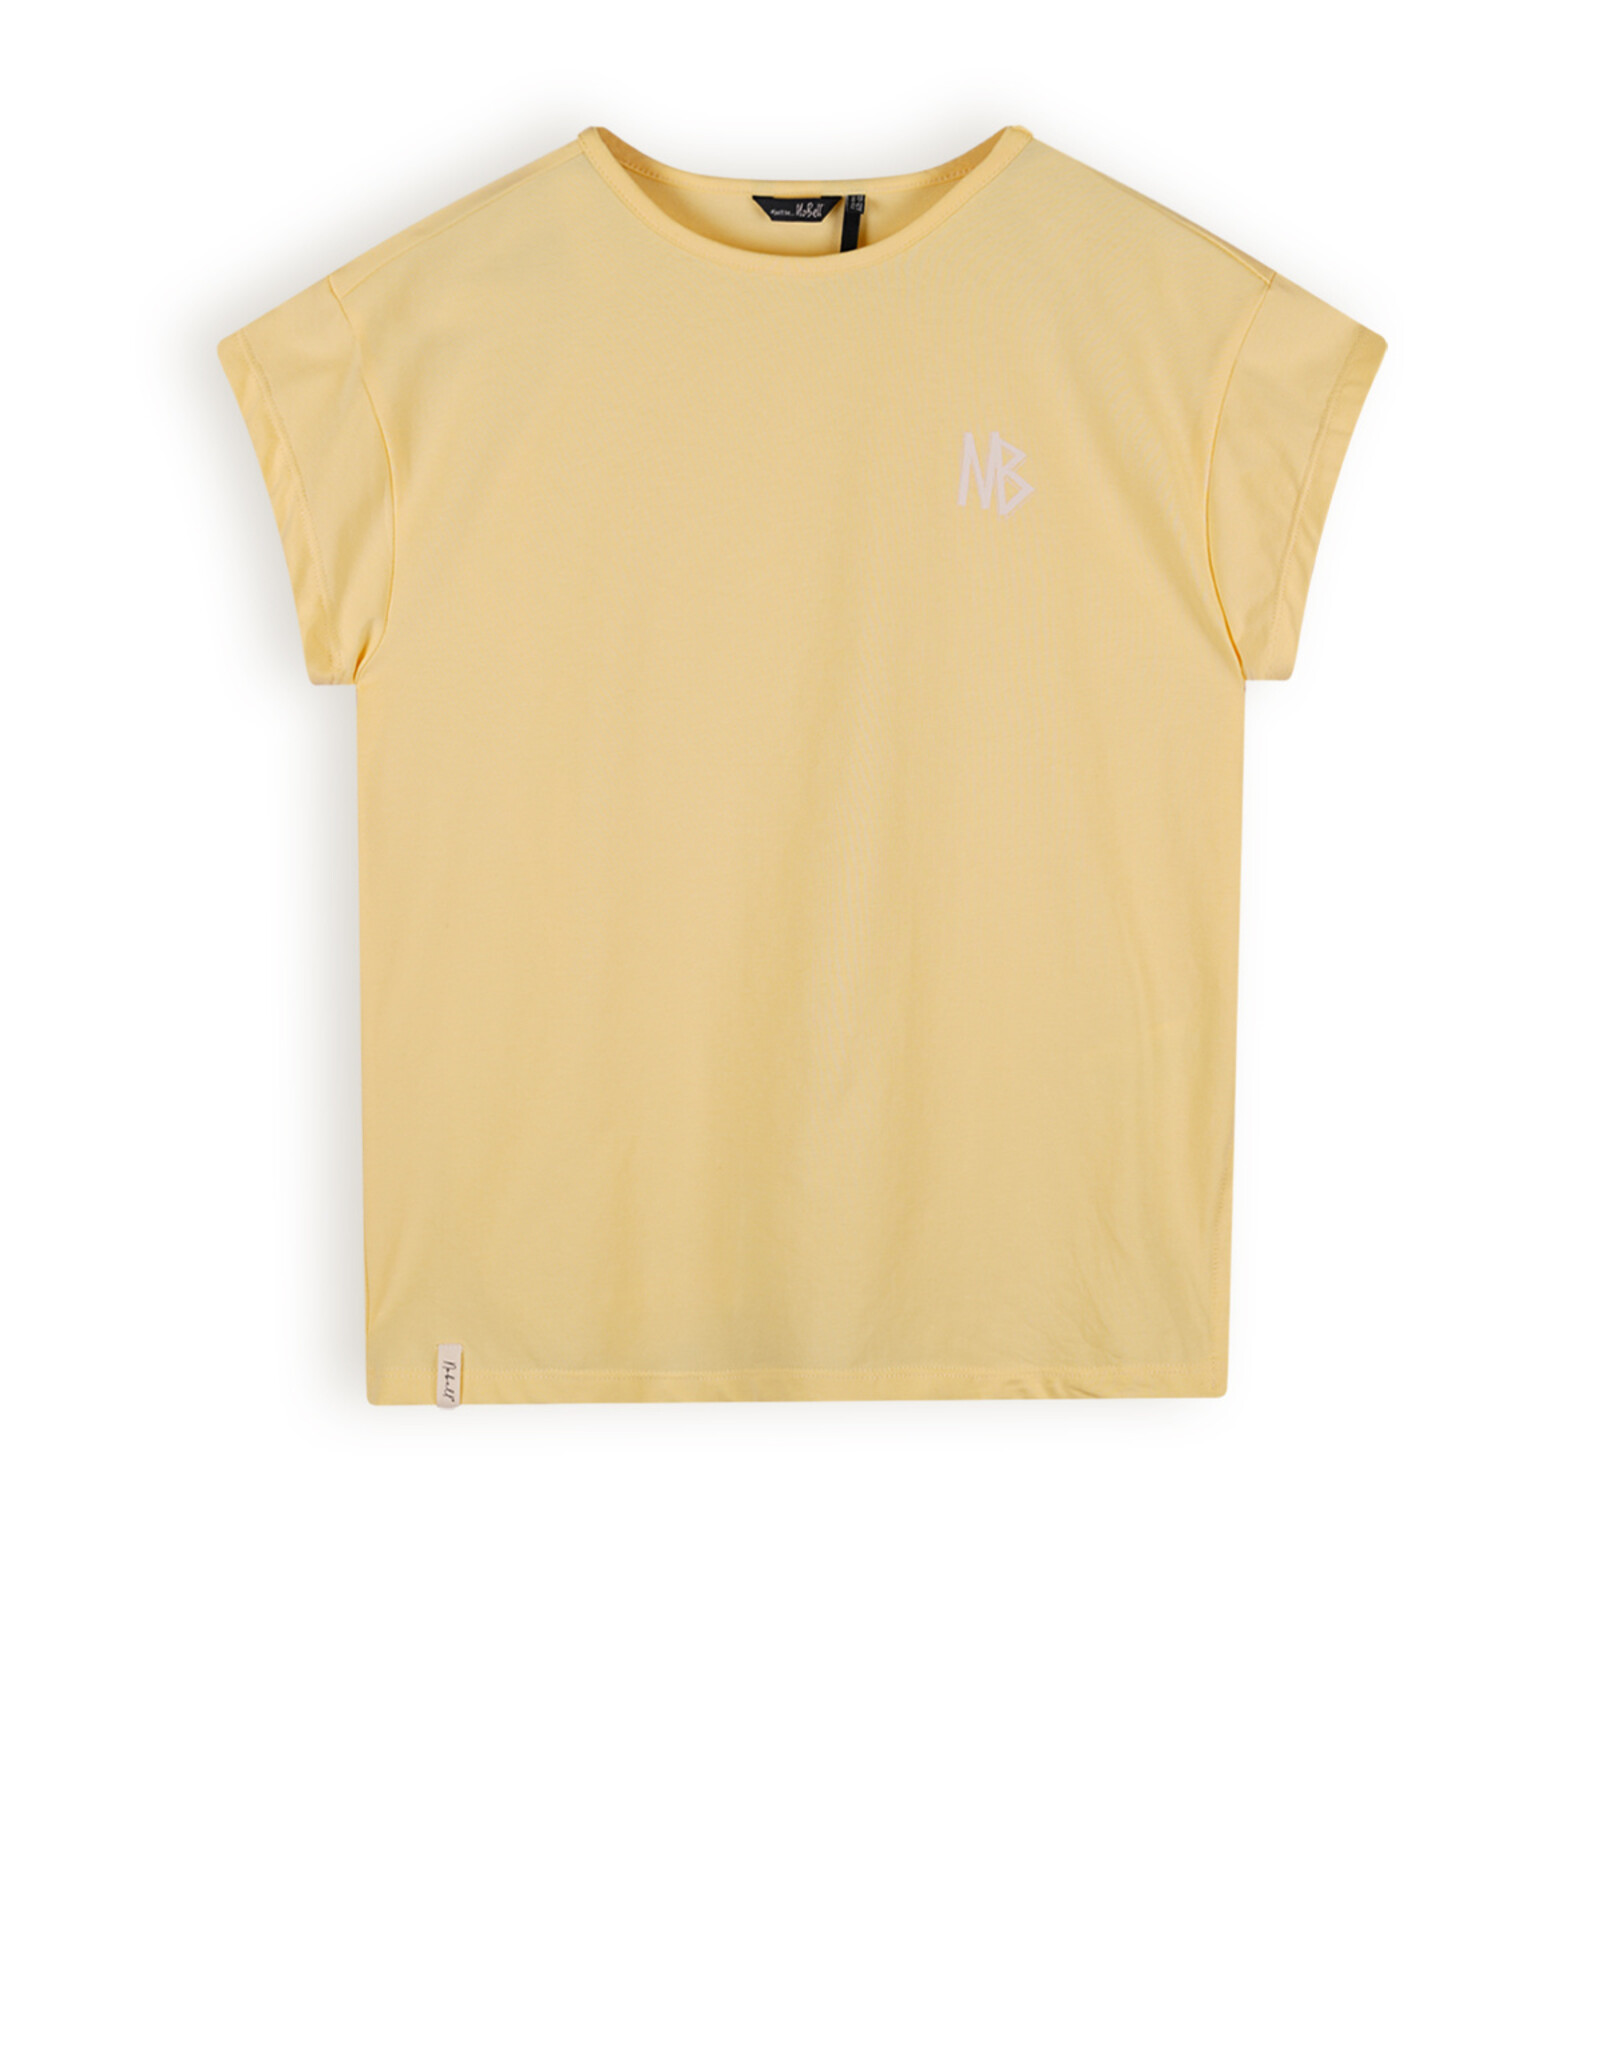 Nobell Top Kasis Big shirt 3413 - lemon